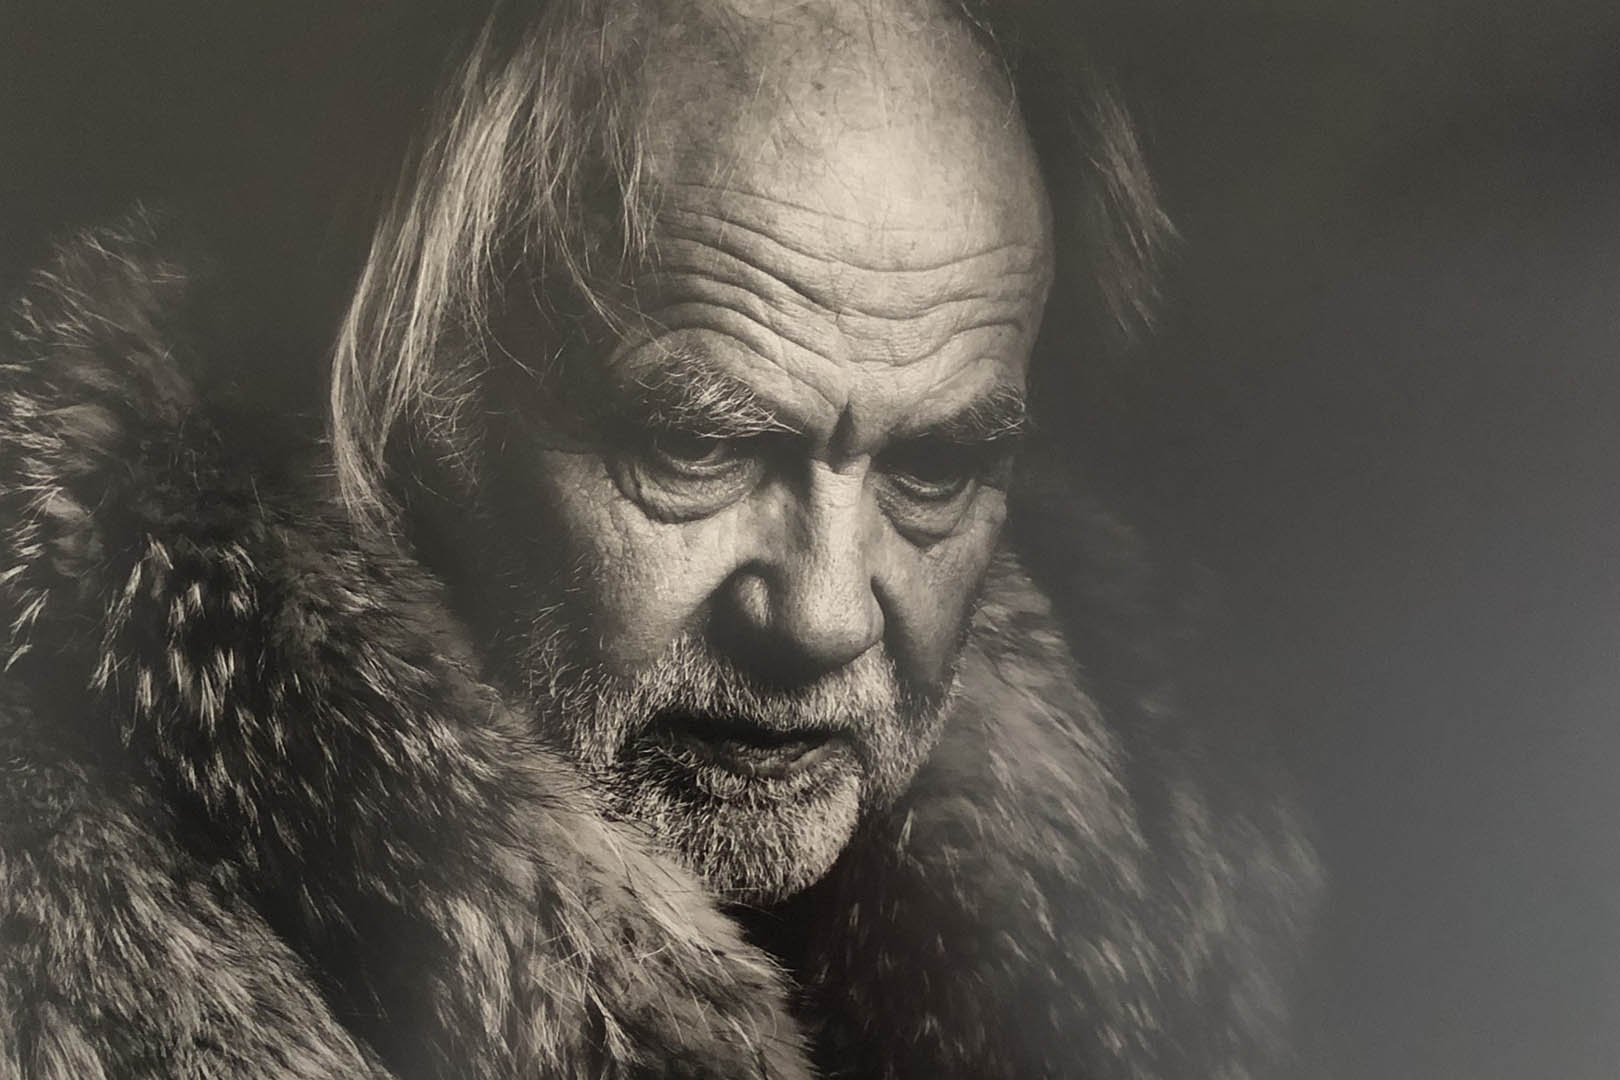 Galleri Lyshuset, The painter of light, The Norwegian painter Kåre Tveter, Photo by Morten Krogvold